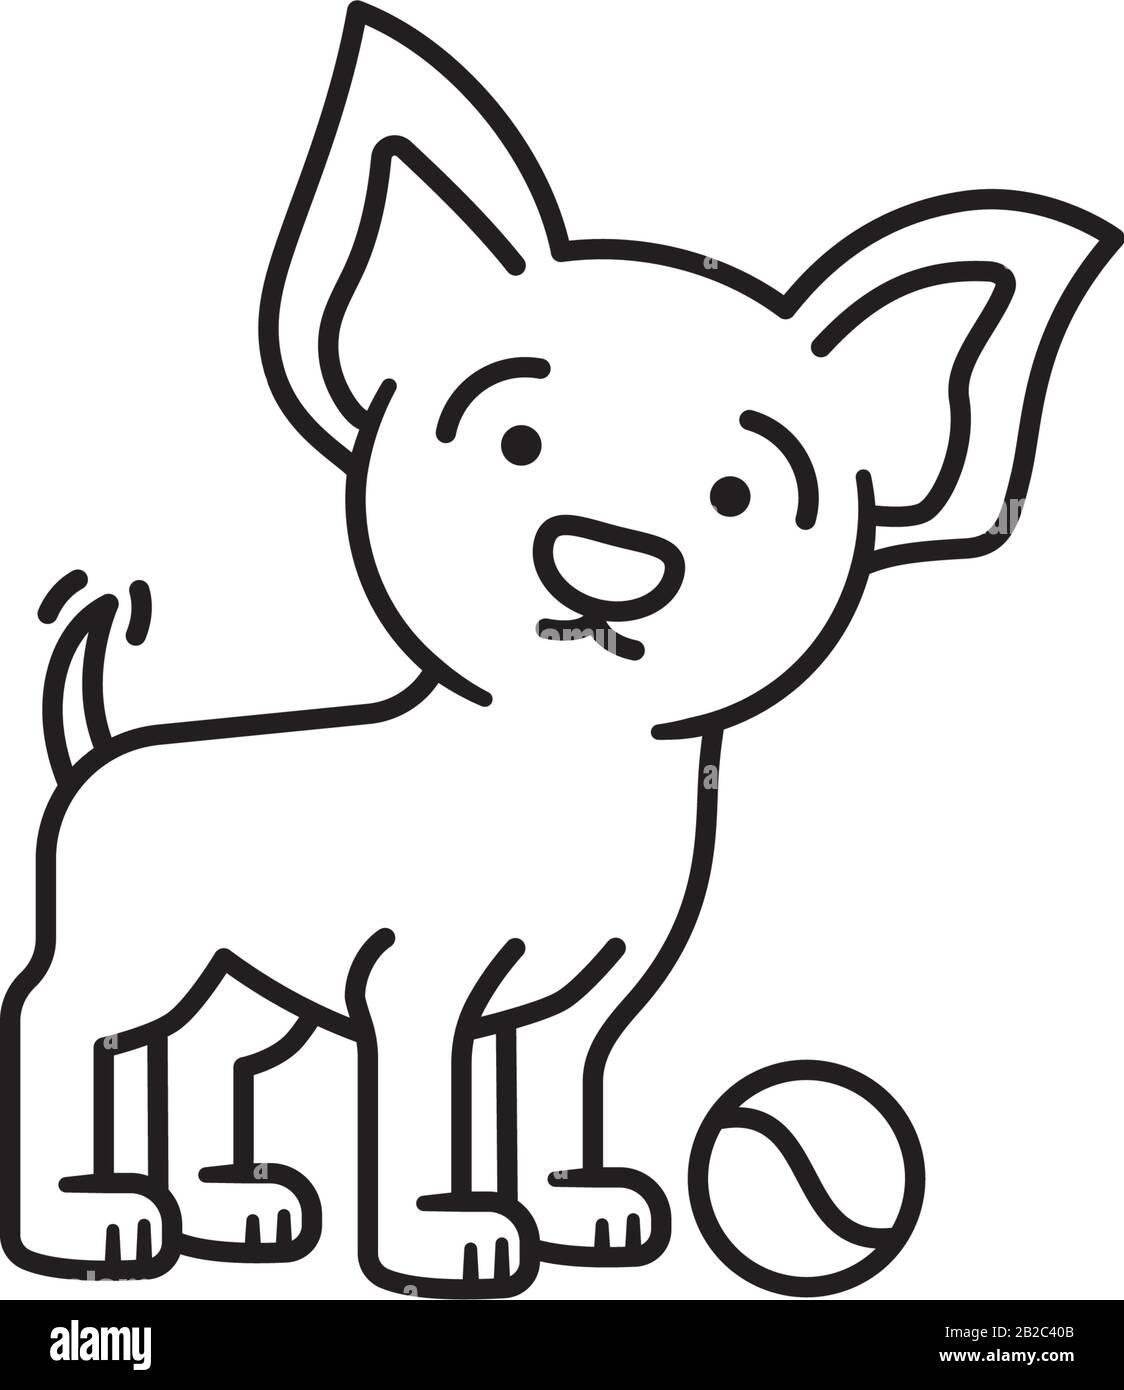 Hundewelpe mit Tennisball und Flügel-Vektor-Pfandsymbol. Verspieltes Symbol für die Kontur von Haustieren. Stock Vektor